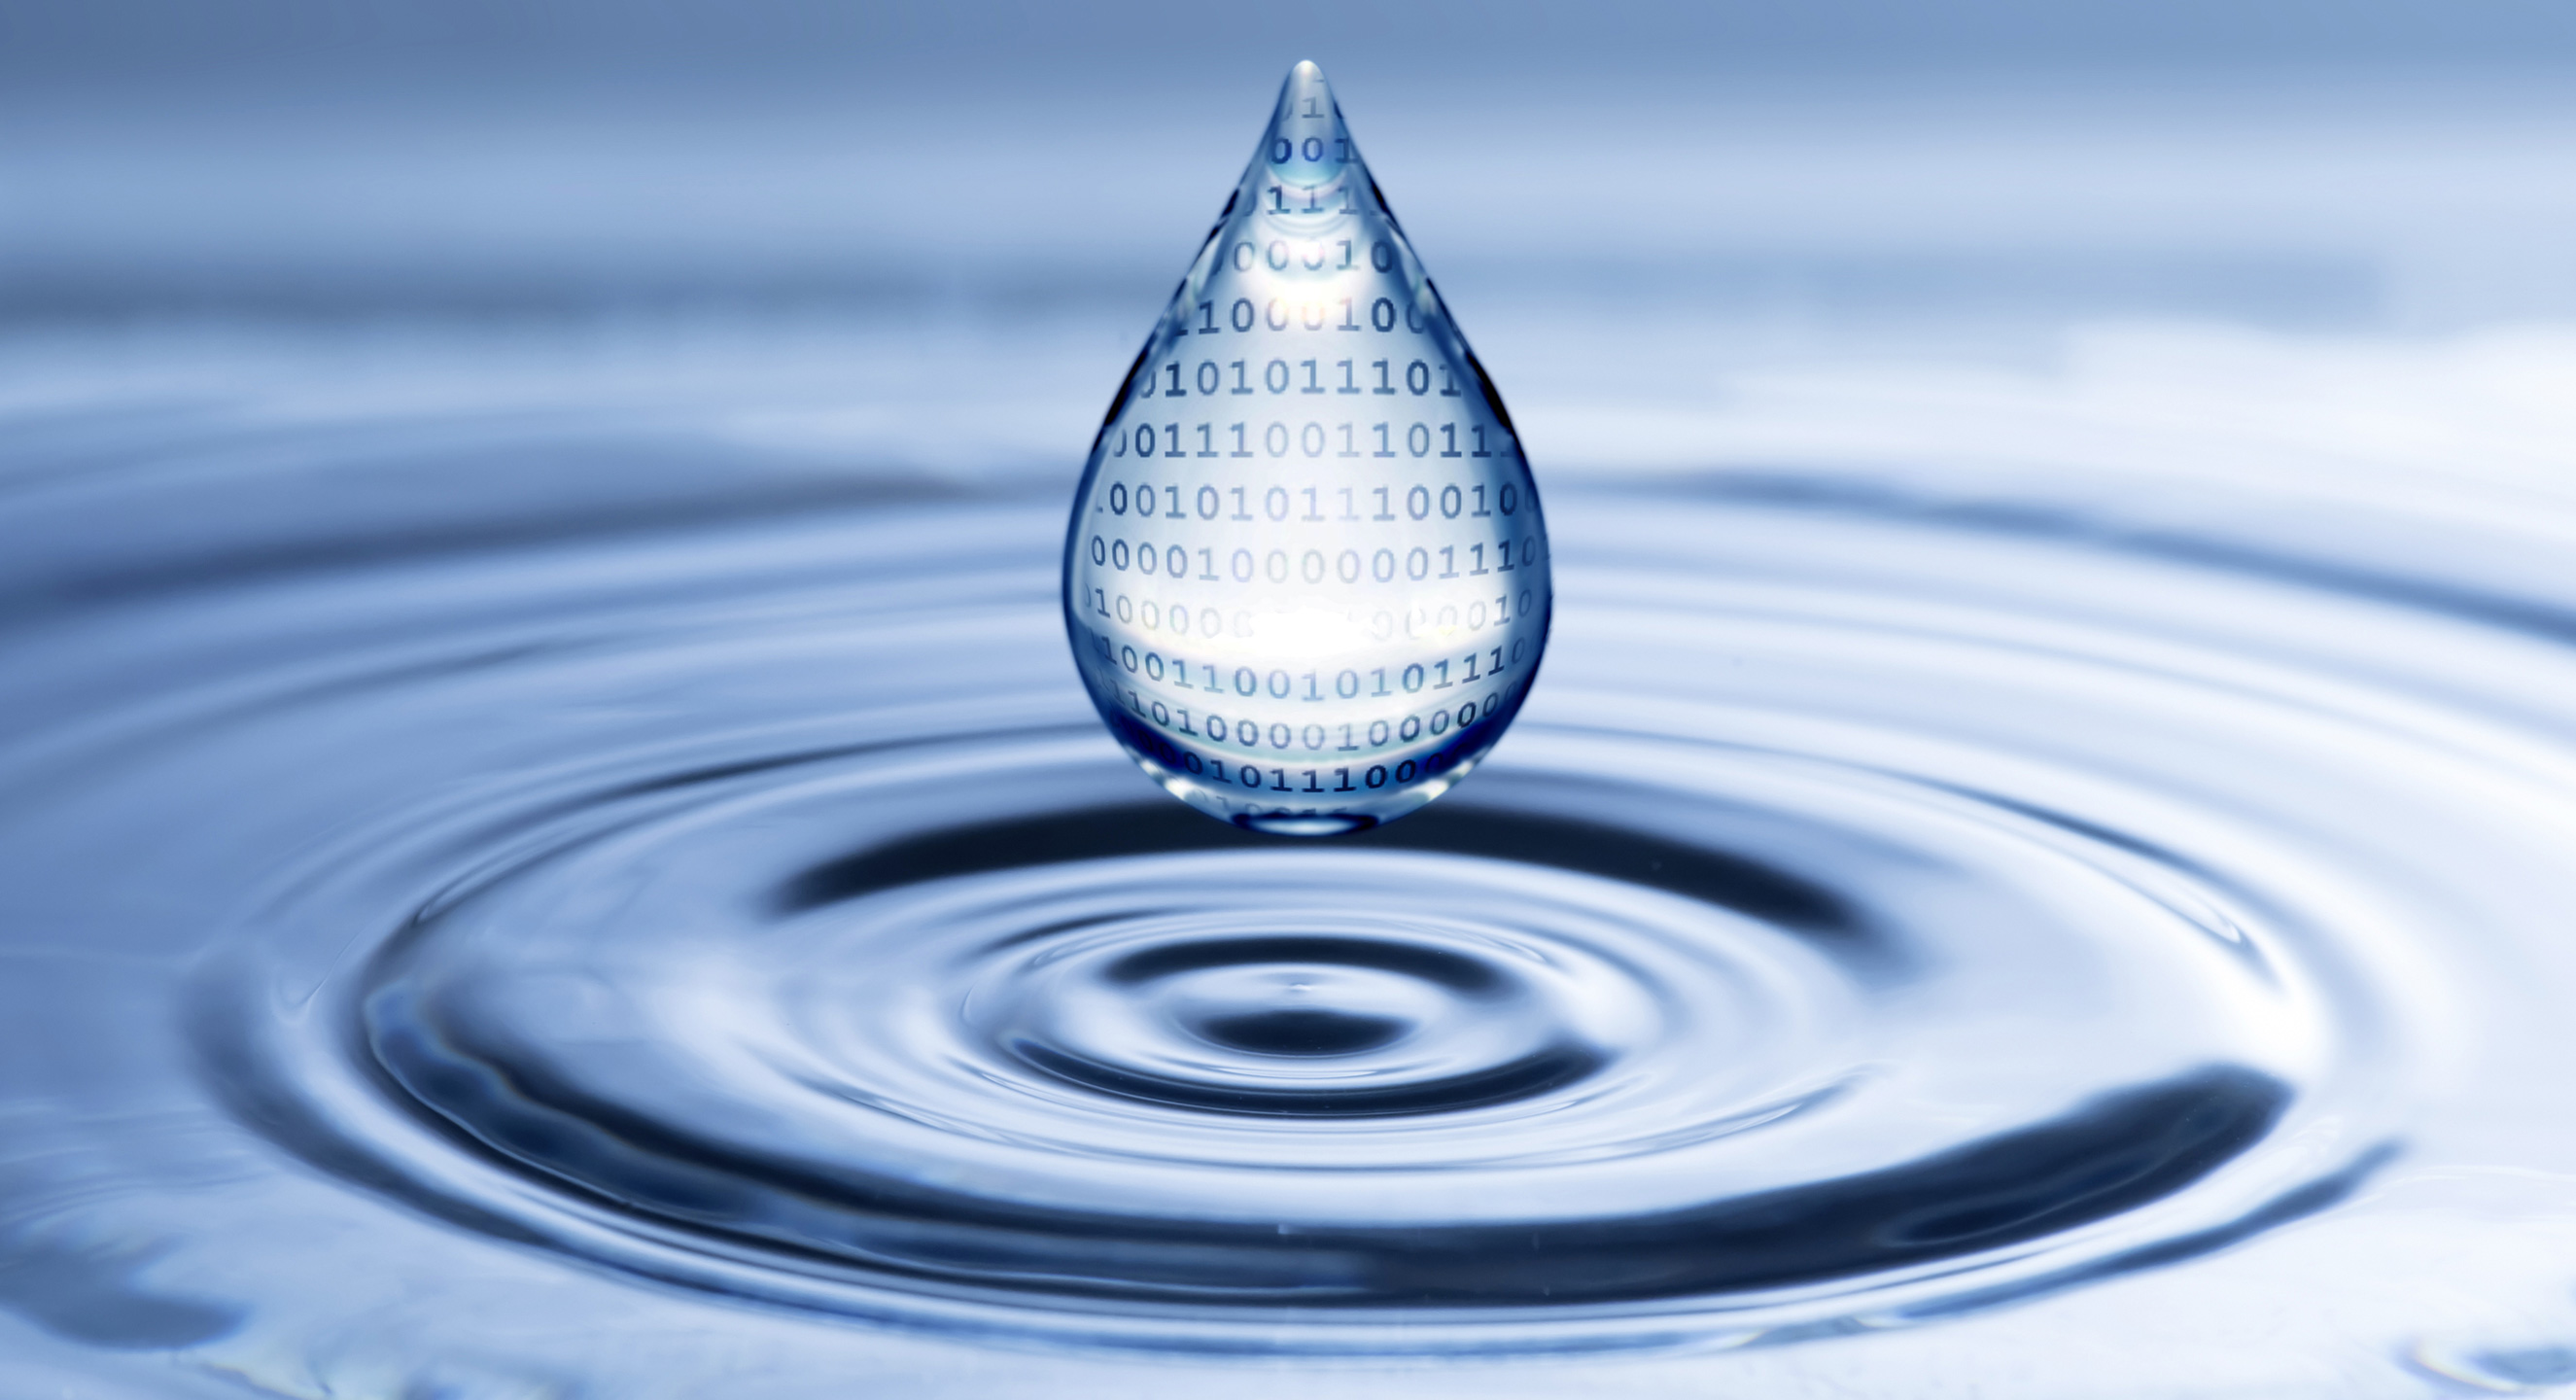 AVK Smart Water monitorerer forsyningsnettet via IoT-enheder installeret på AVK's standardventiler og brandhaner